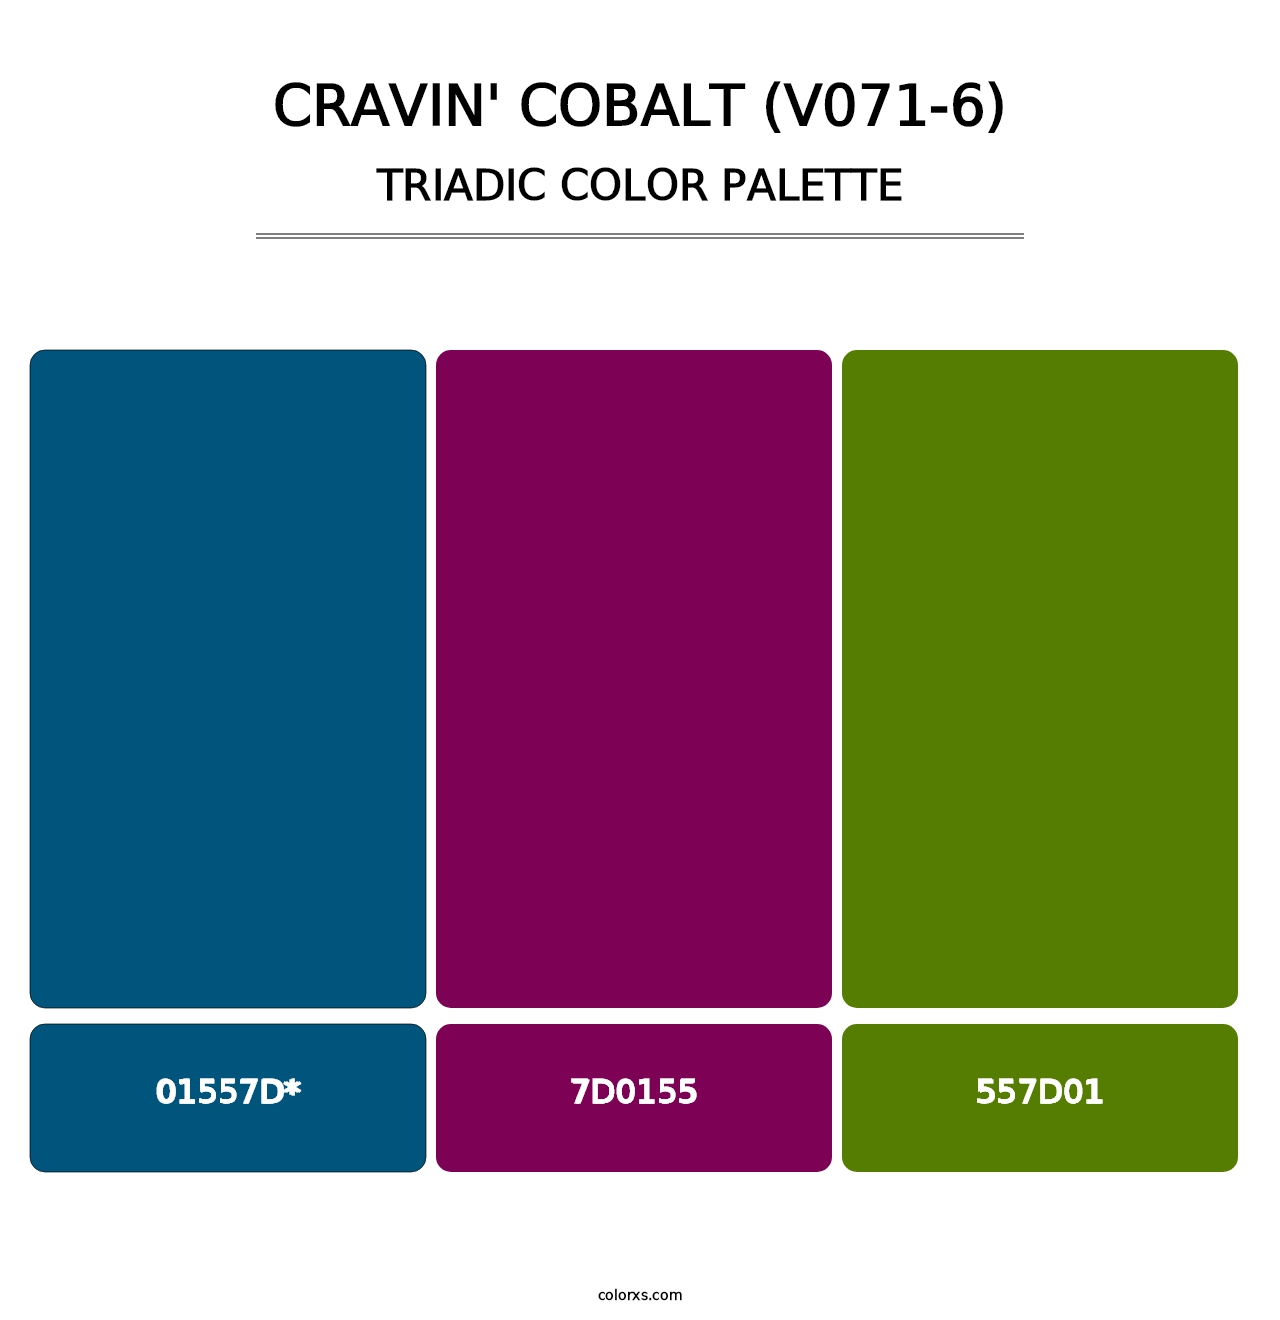 Cravin' Cobalt (V071-6) - Triadic Color Palette